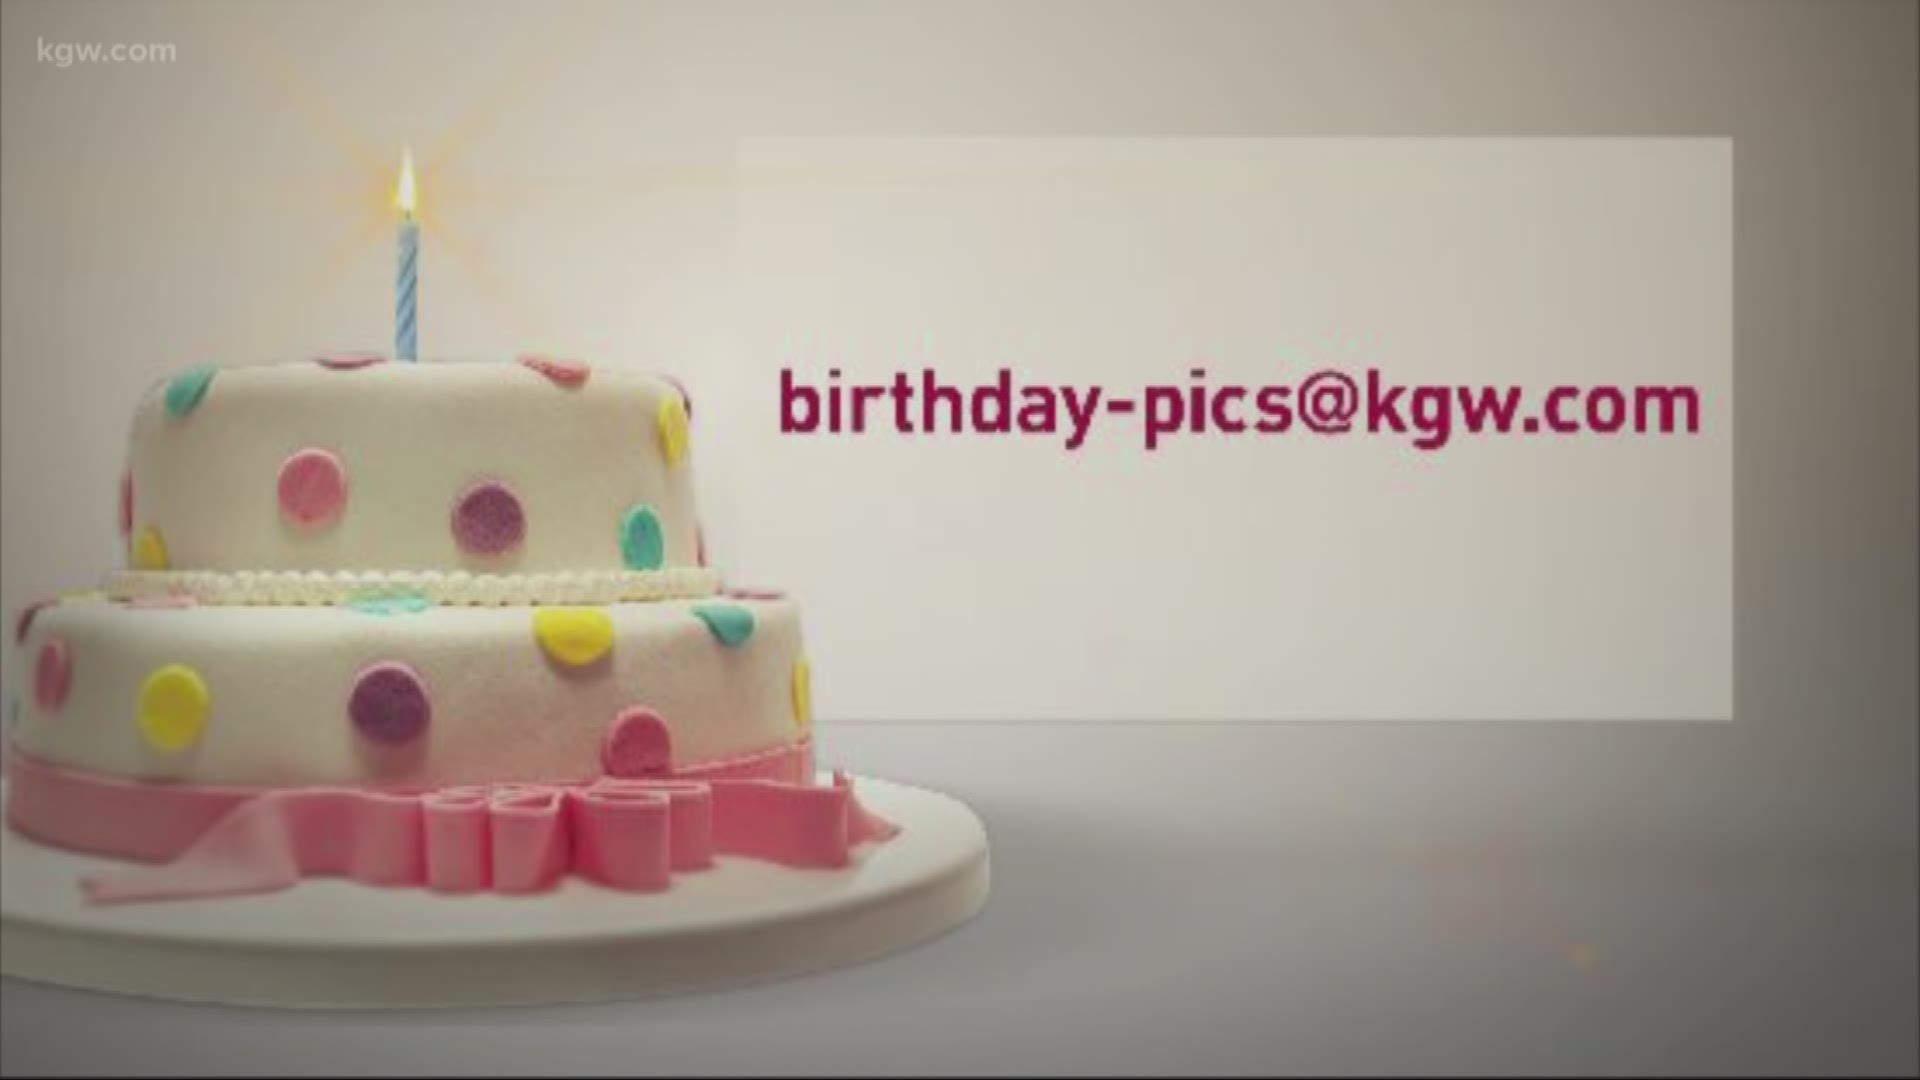 KGW viewer birthdays 4-14-18